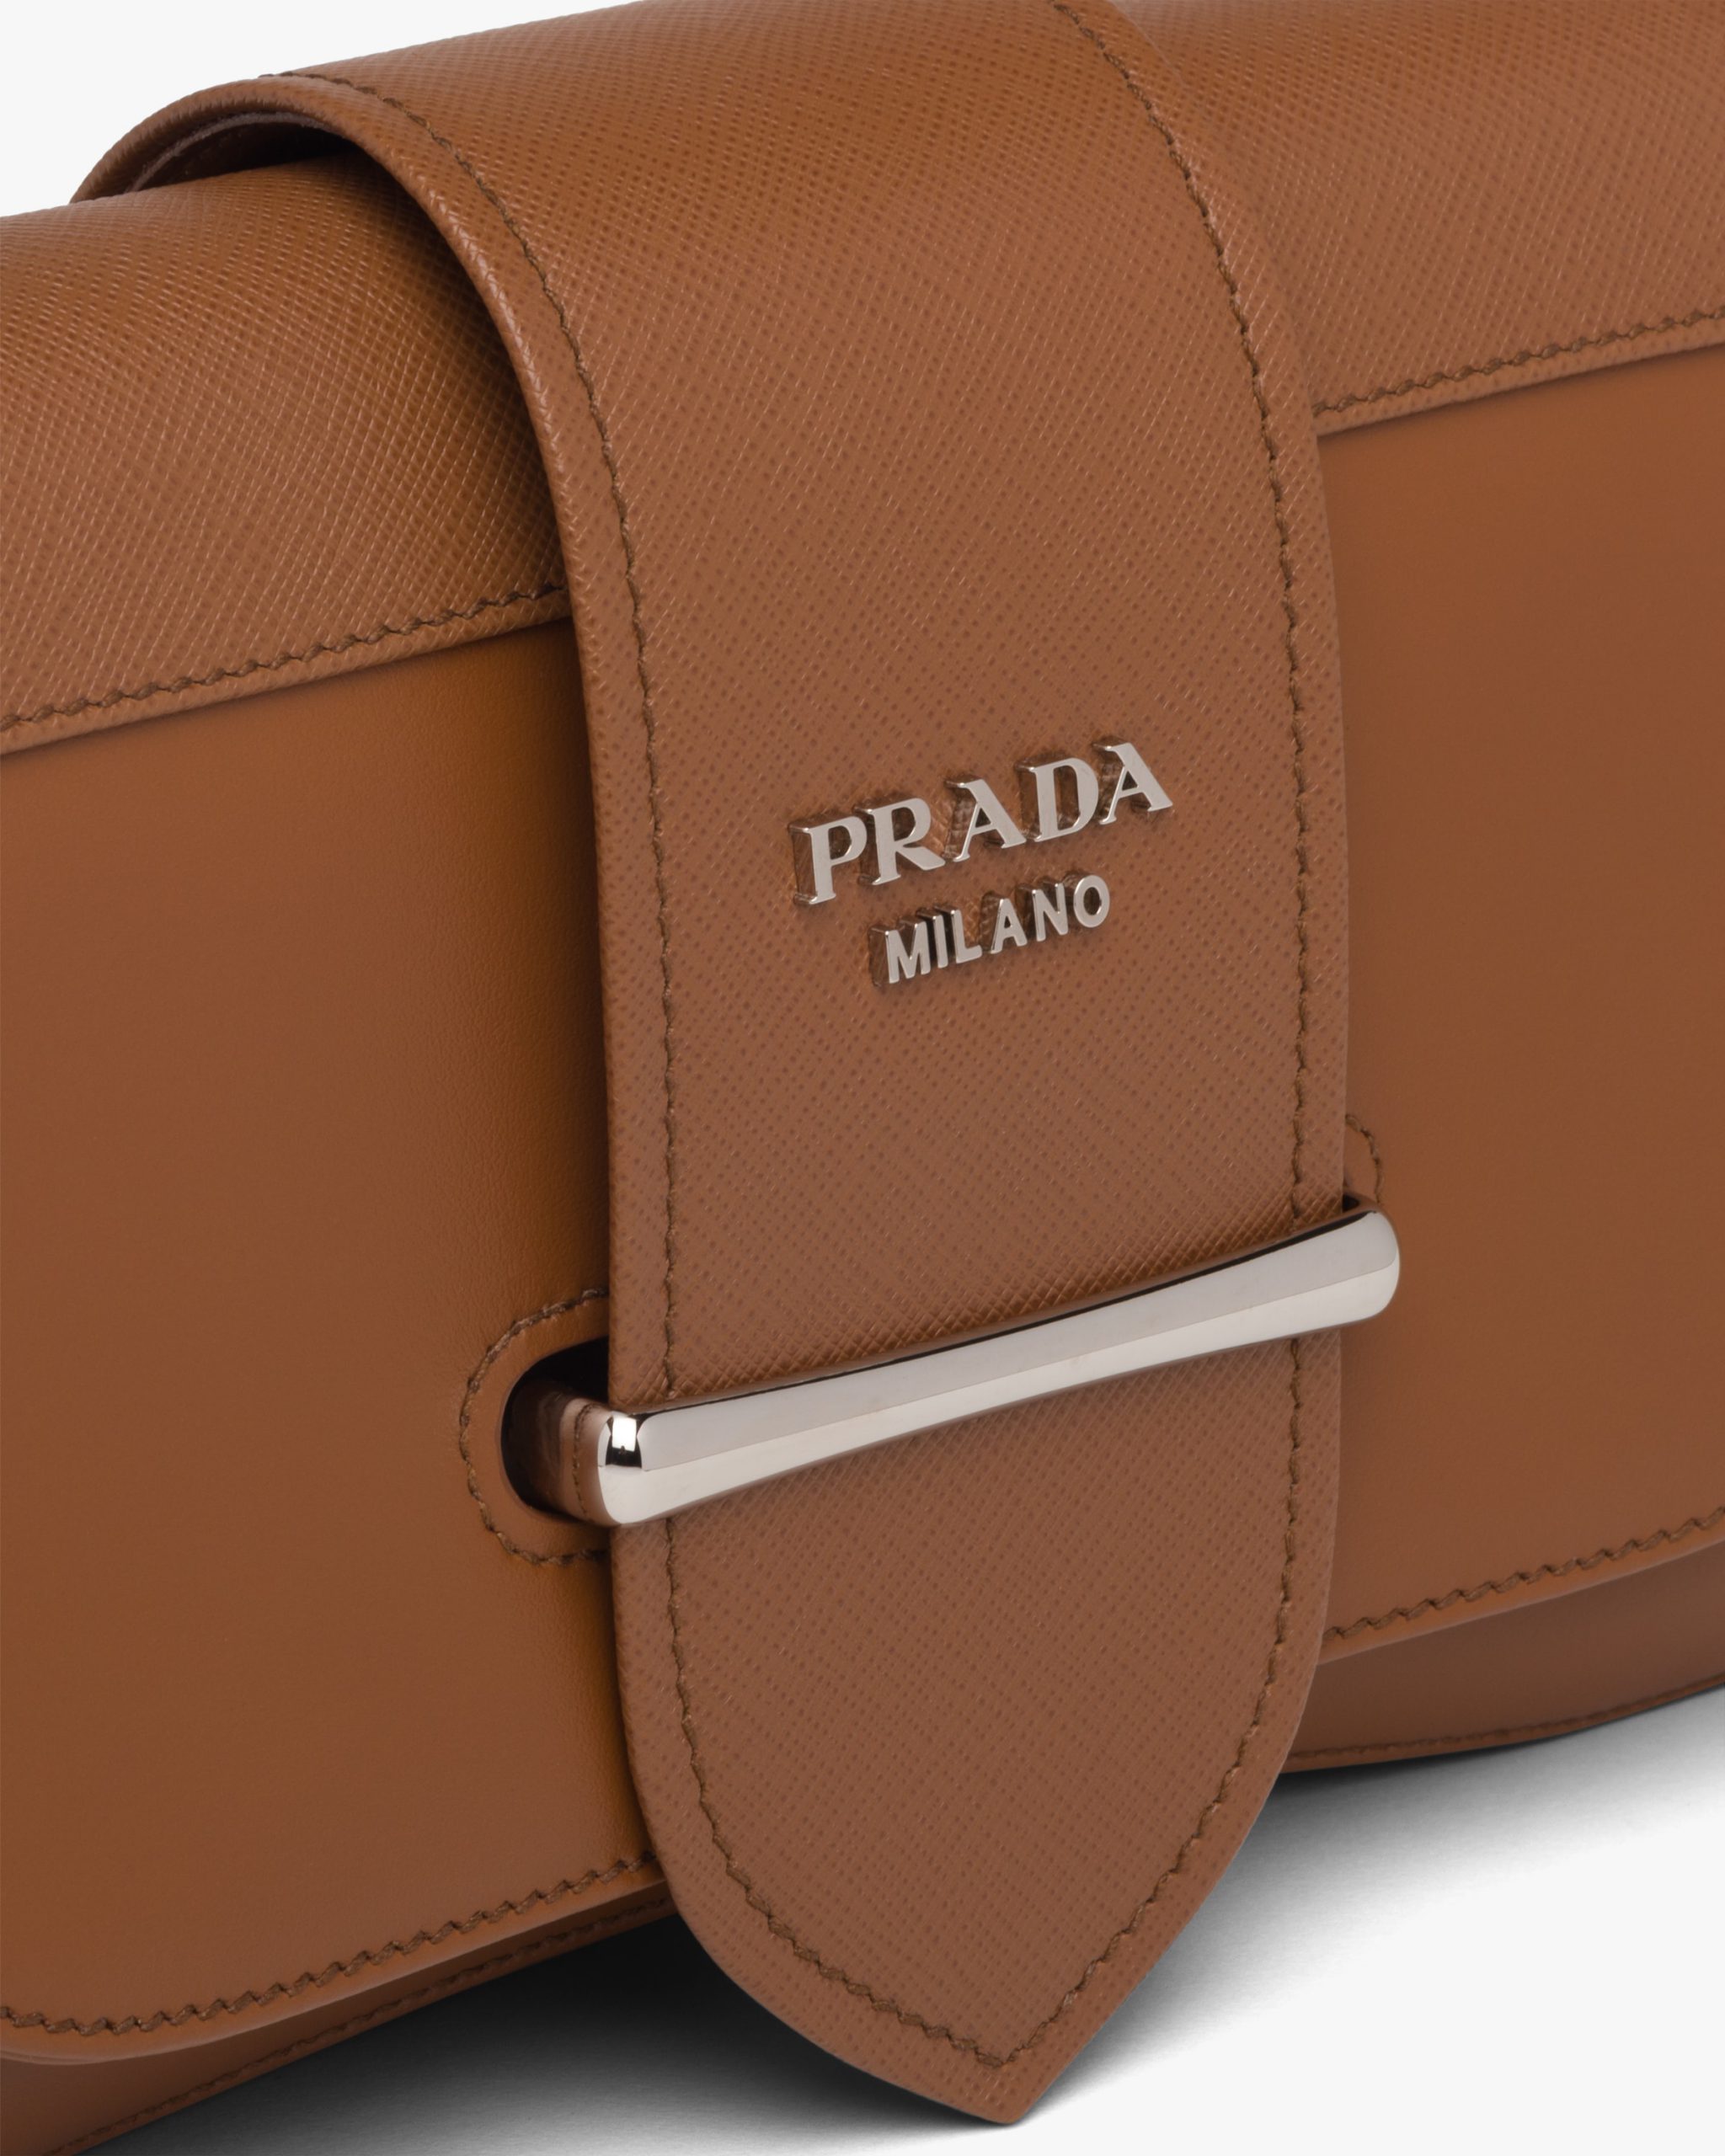 Prada Medium Sidonie Lux Leather Bag In F0046 Cognac